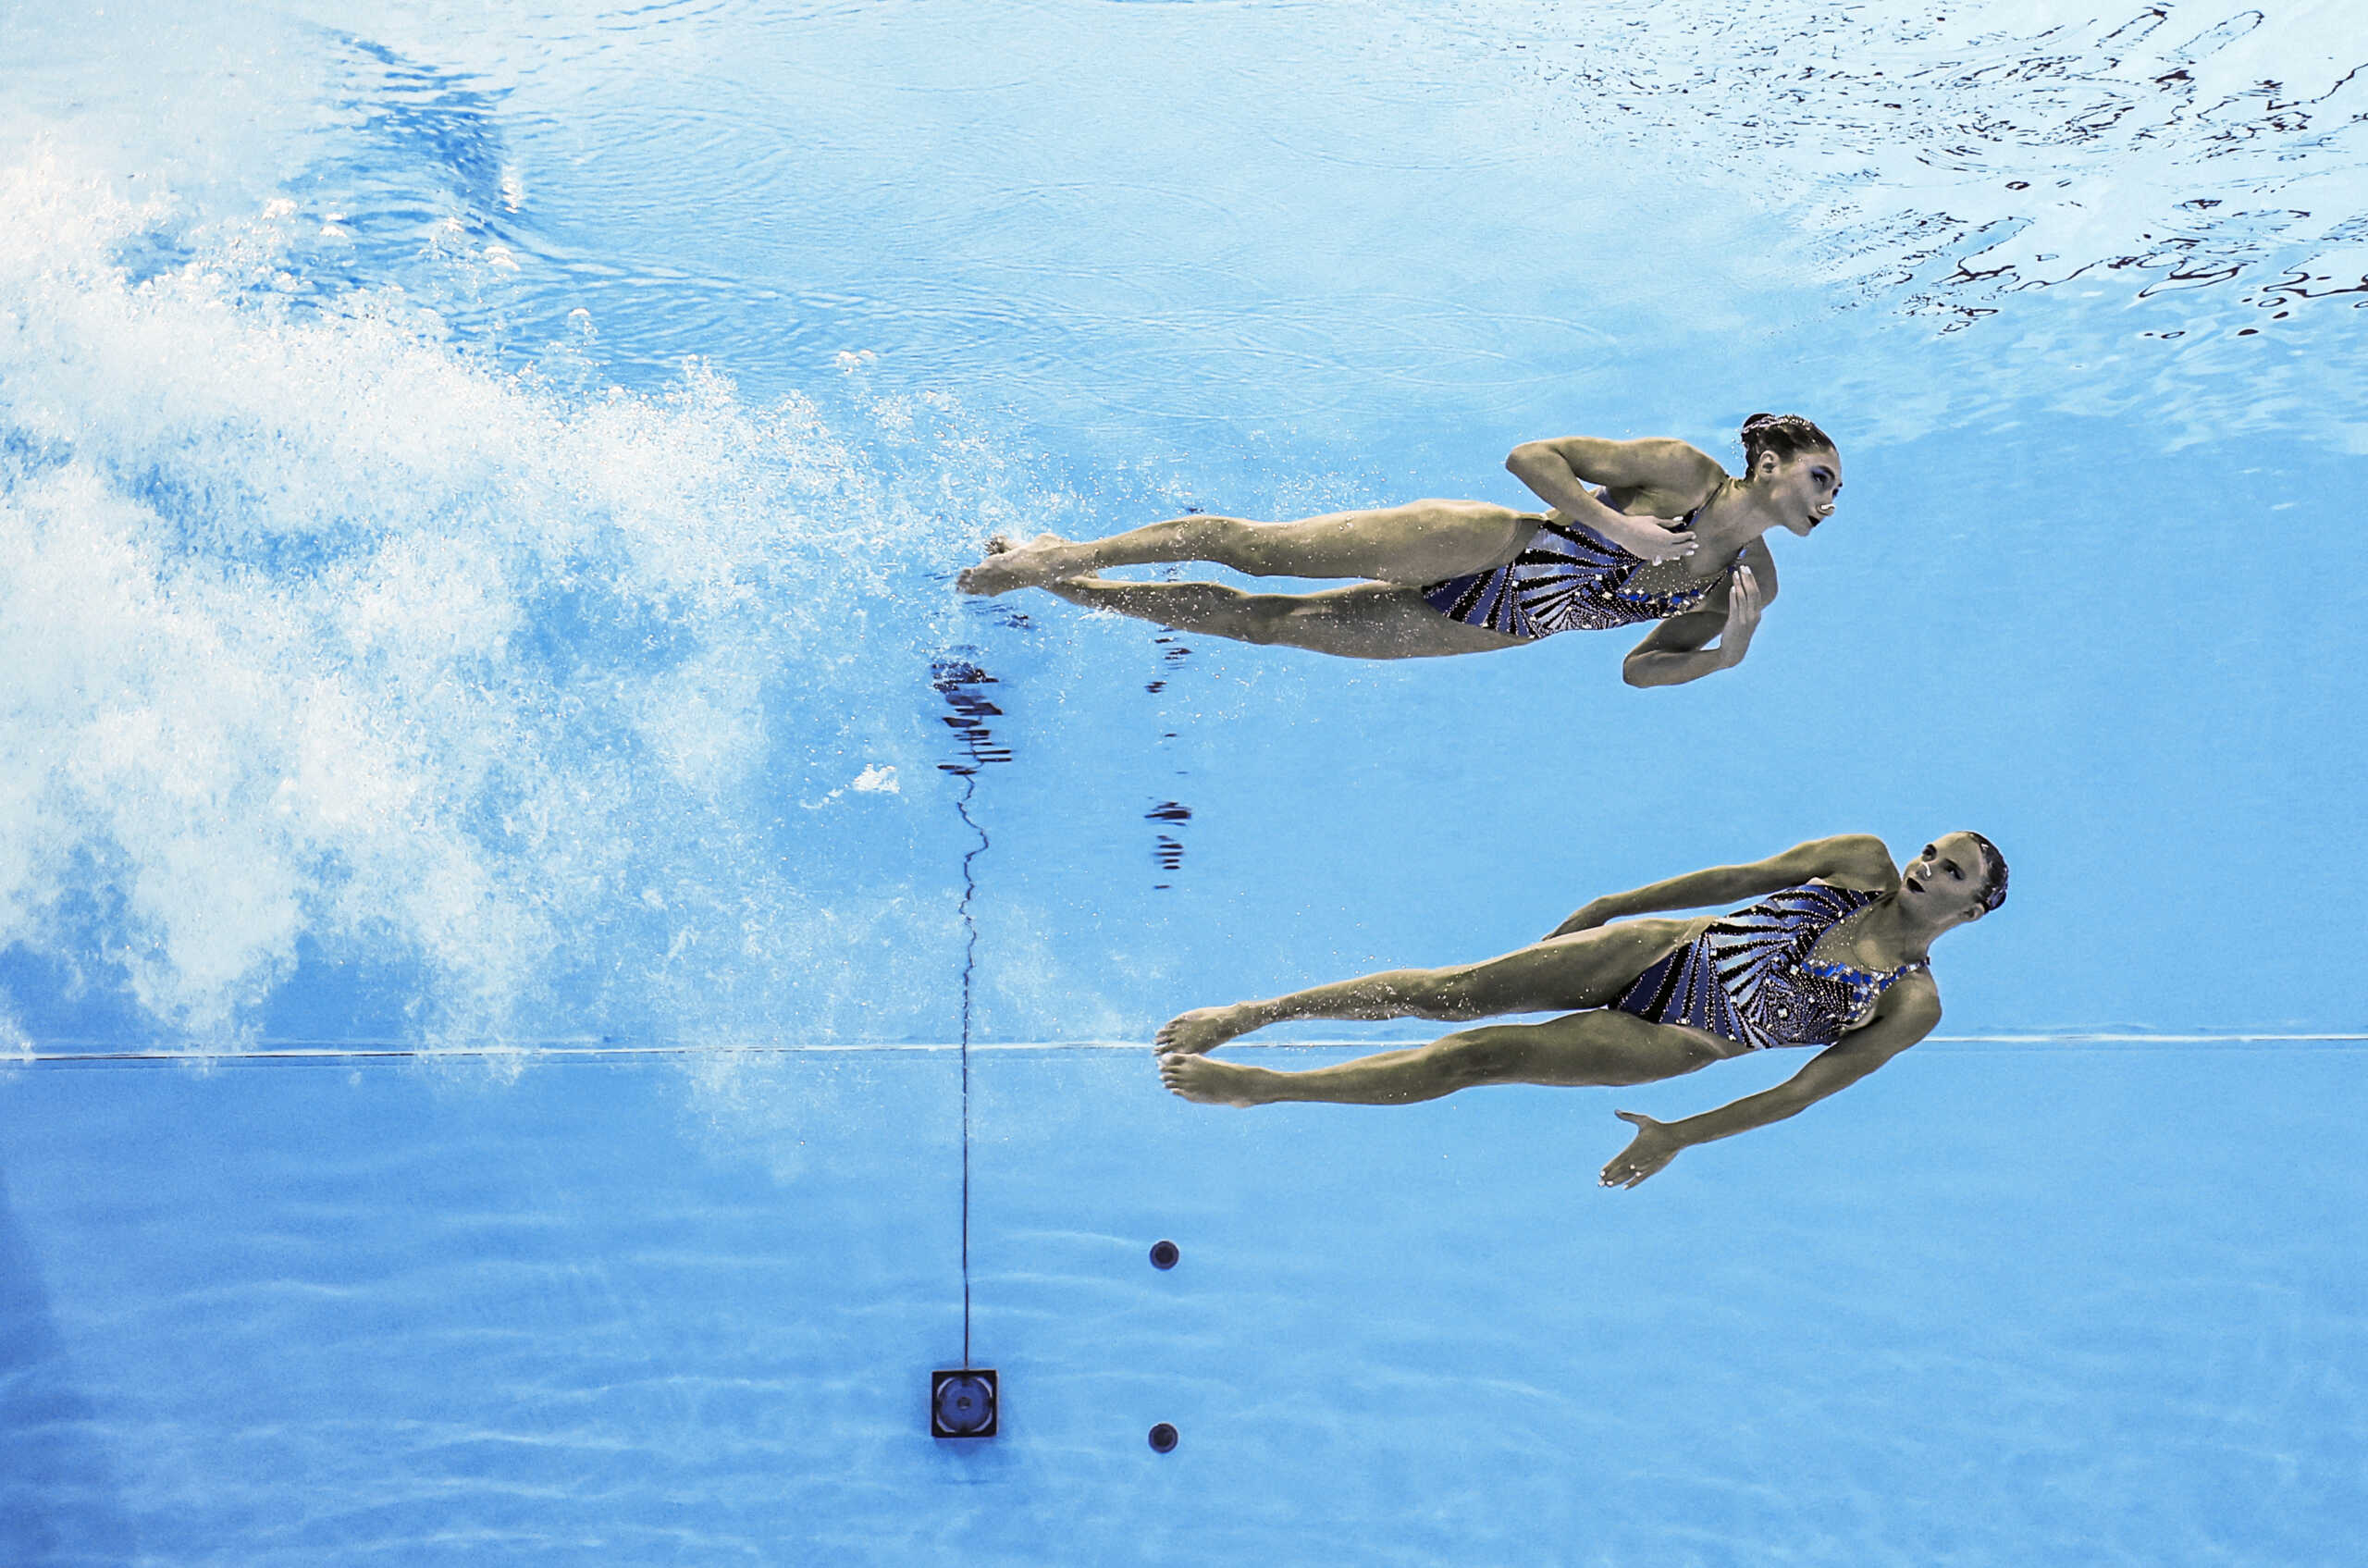 Ευαγγελία Πλατανιώτη και Σοφία Μαλκογεώργου προκρίθηκαν στον τελικό του ελεύθερου ντουέτου στο παγκόσμιο καλλιτεχνικής κολύμβησης